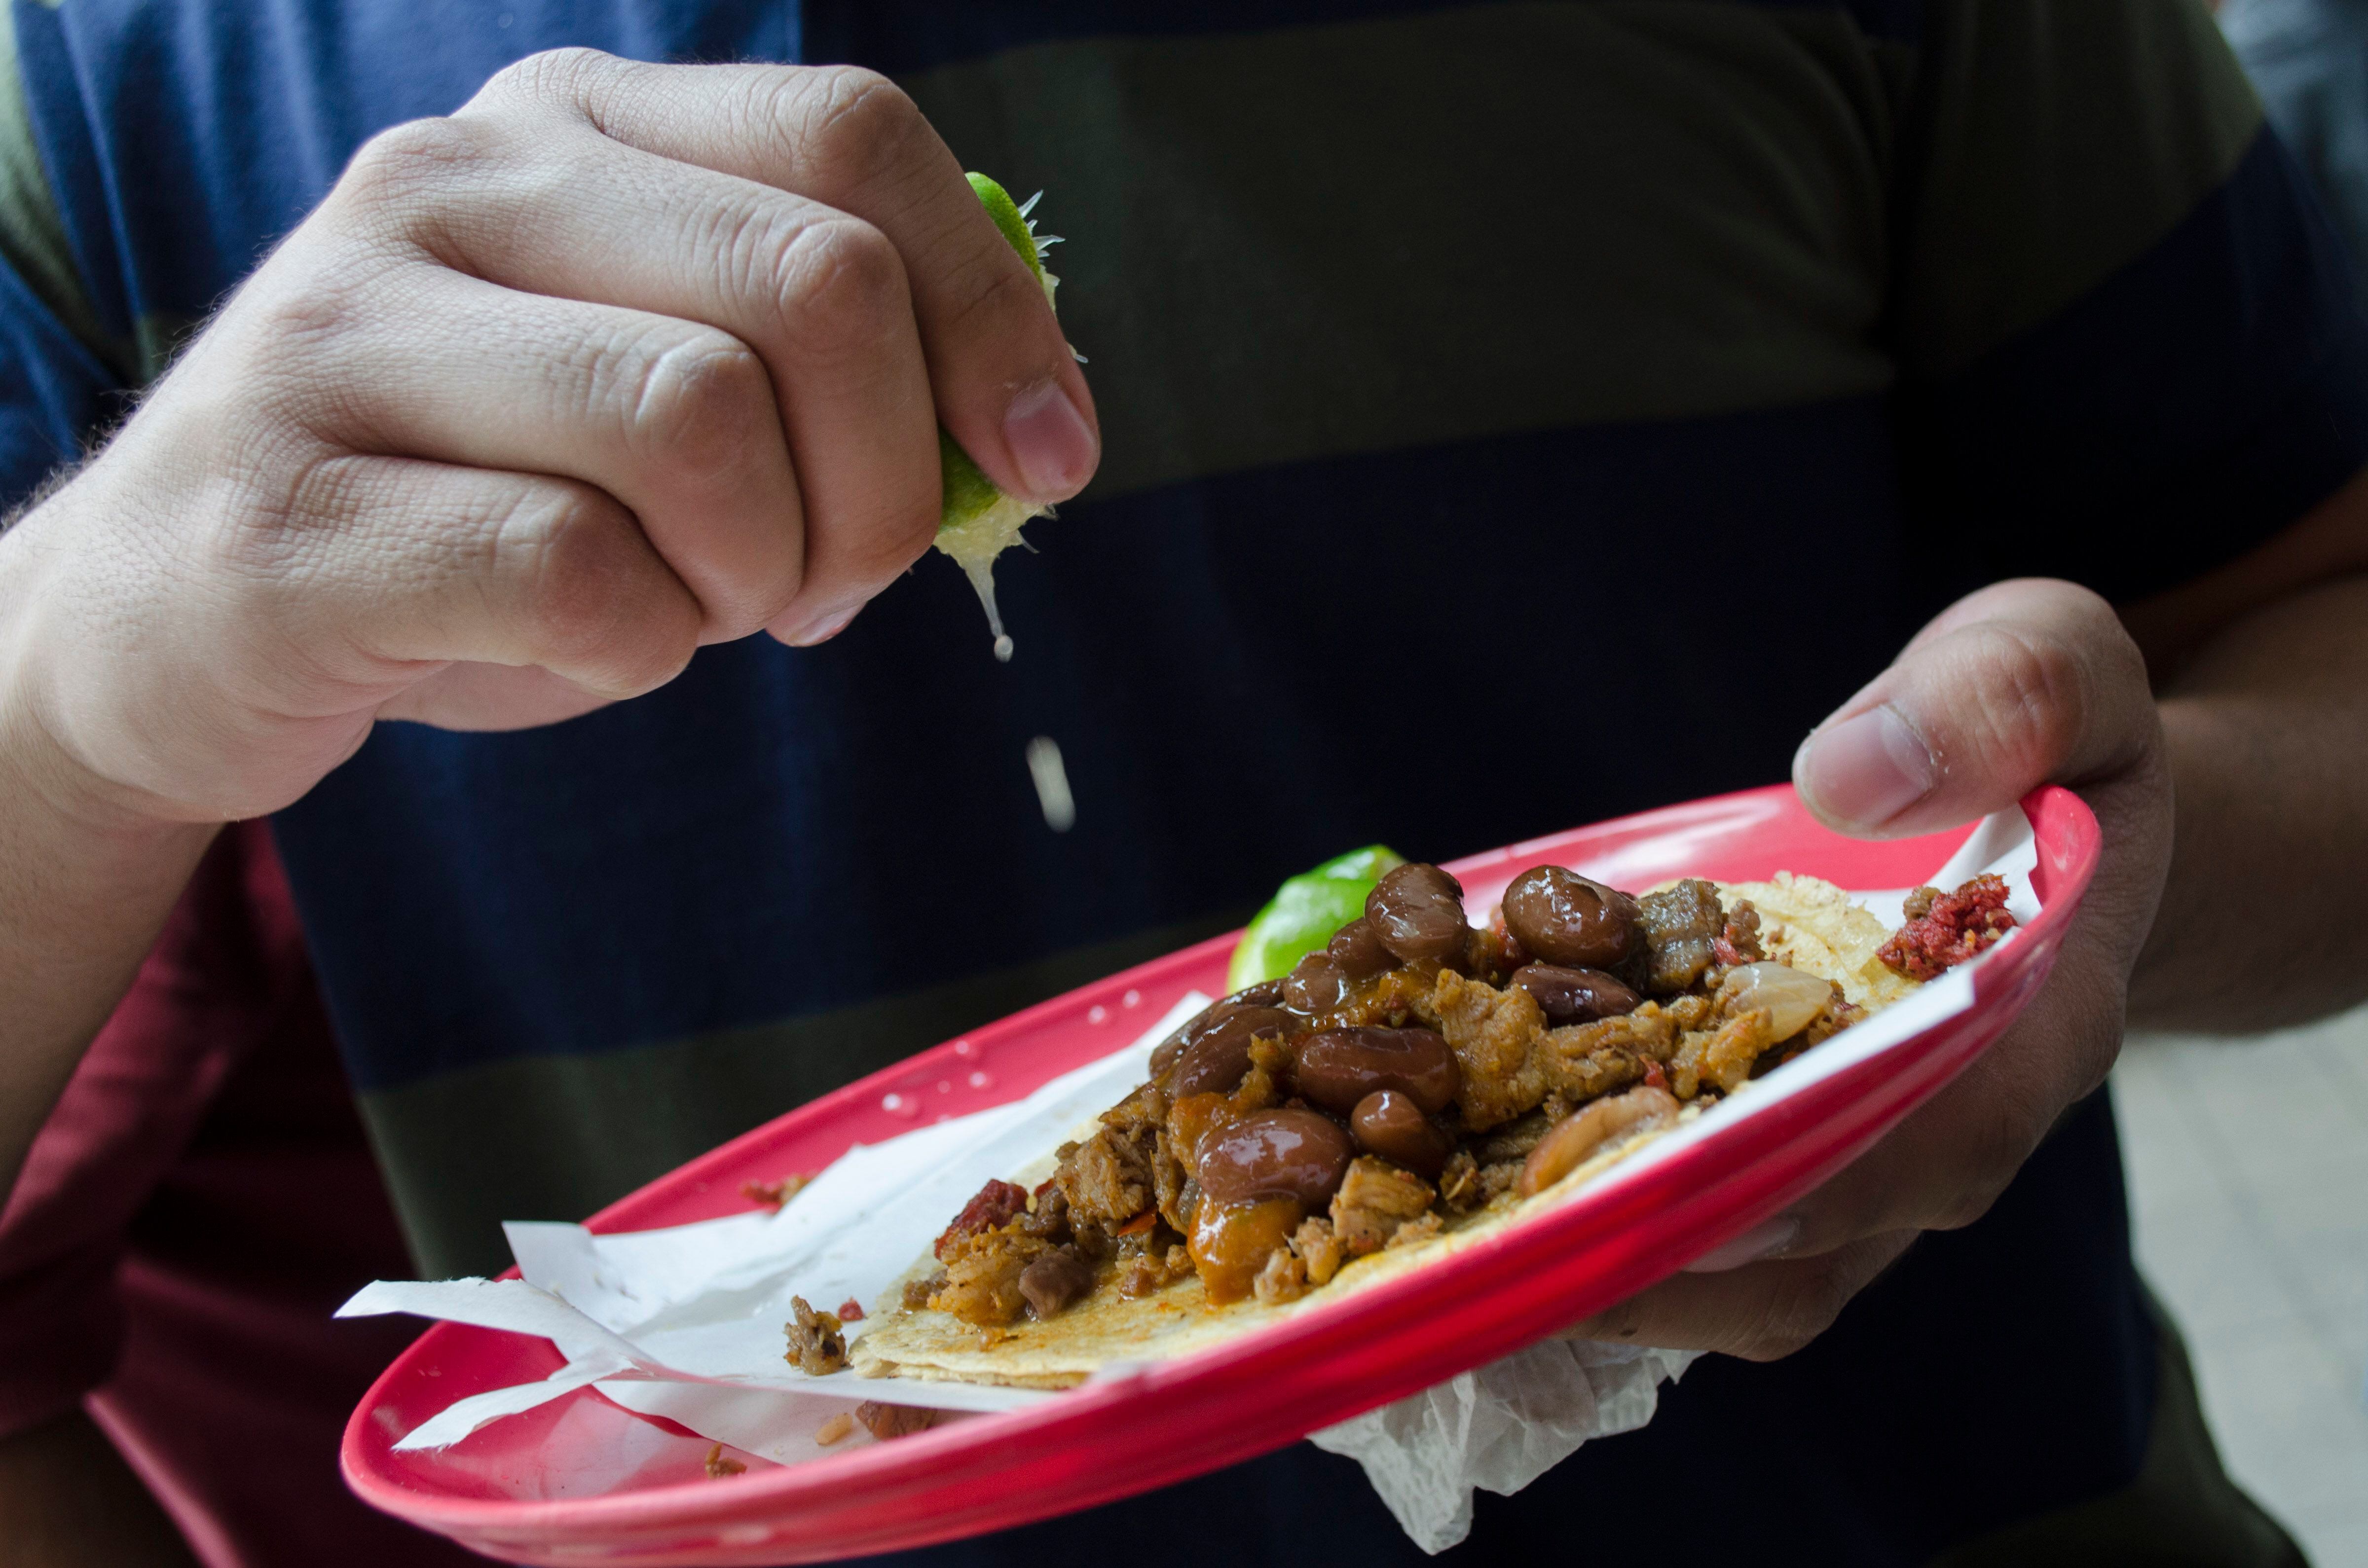 Los tacos son la mejor comida callejera mexicana a nivel mundial, según The World Food Atlas (FOTO: MARÍA JOSÉ MARTÍNEZ /CUARTOSCURO.COM)